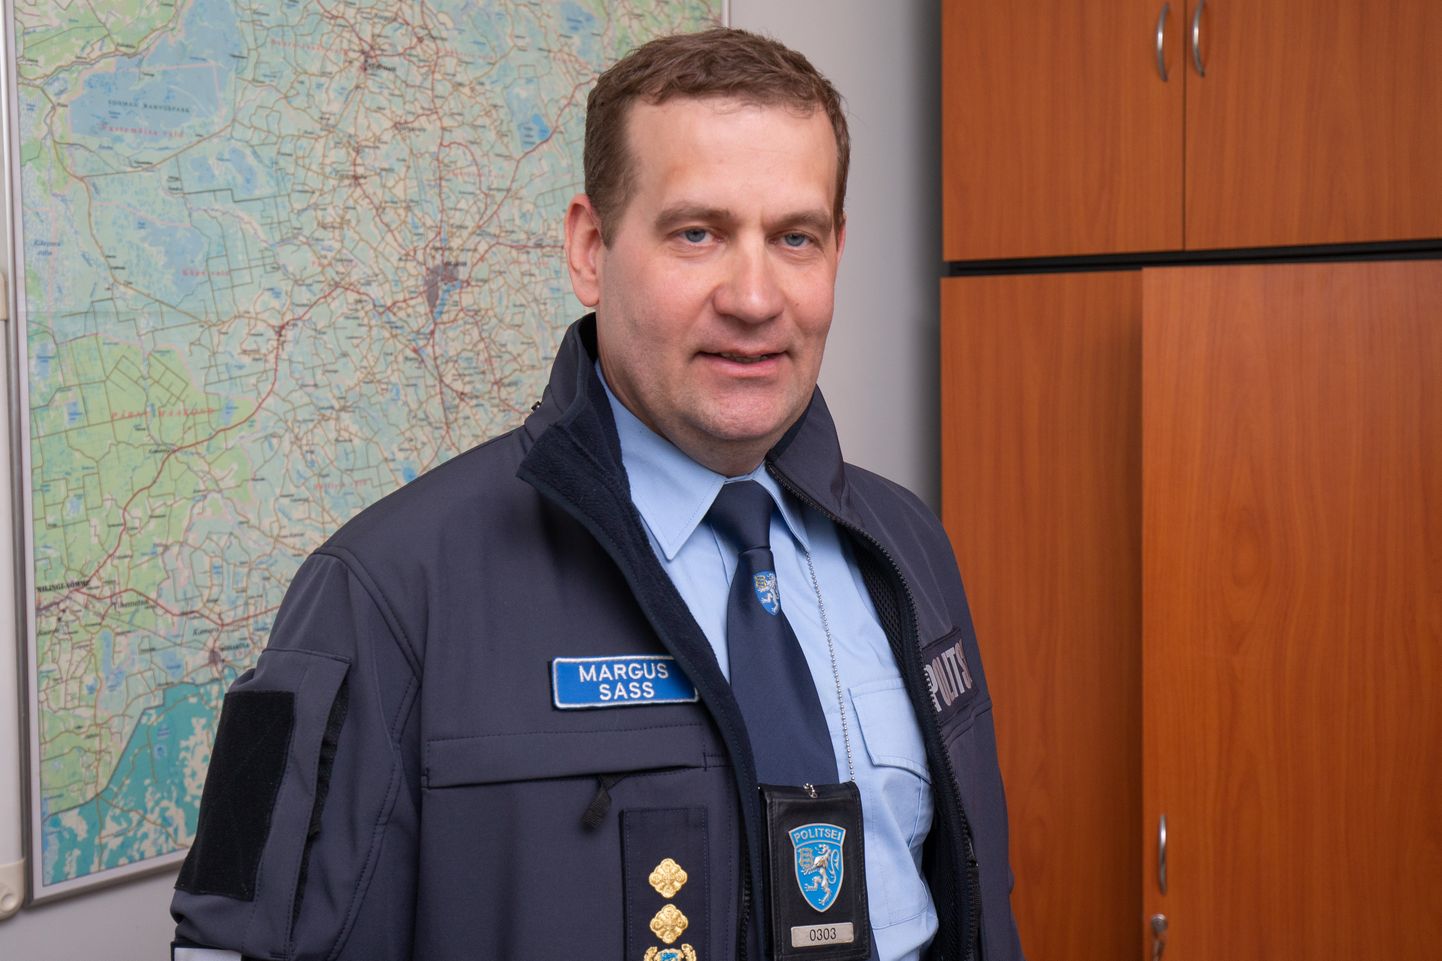 Viljandi politseijaoskonna juht Margus Sass jäi vabariigi aastapäevaga politsei vaatevinklist igati rahule.